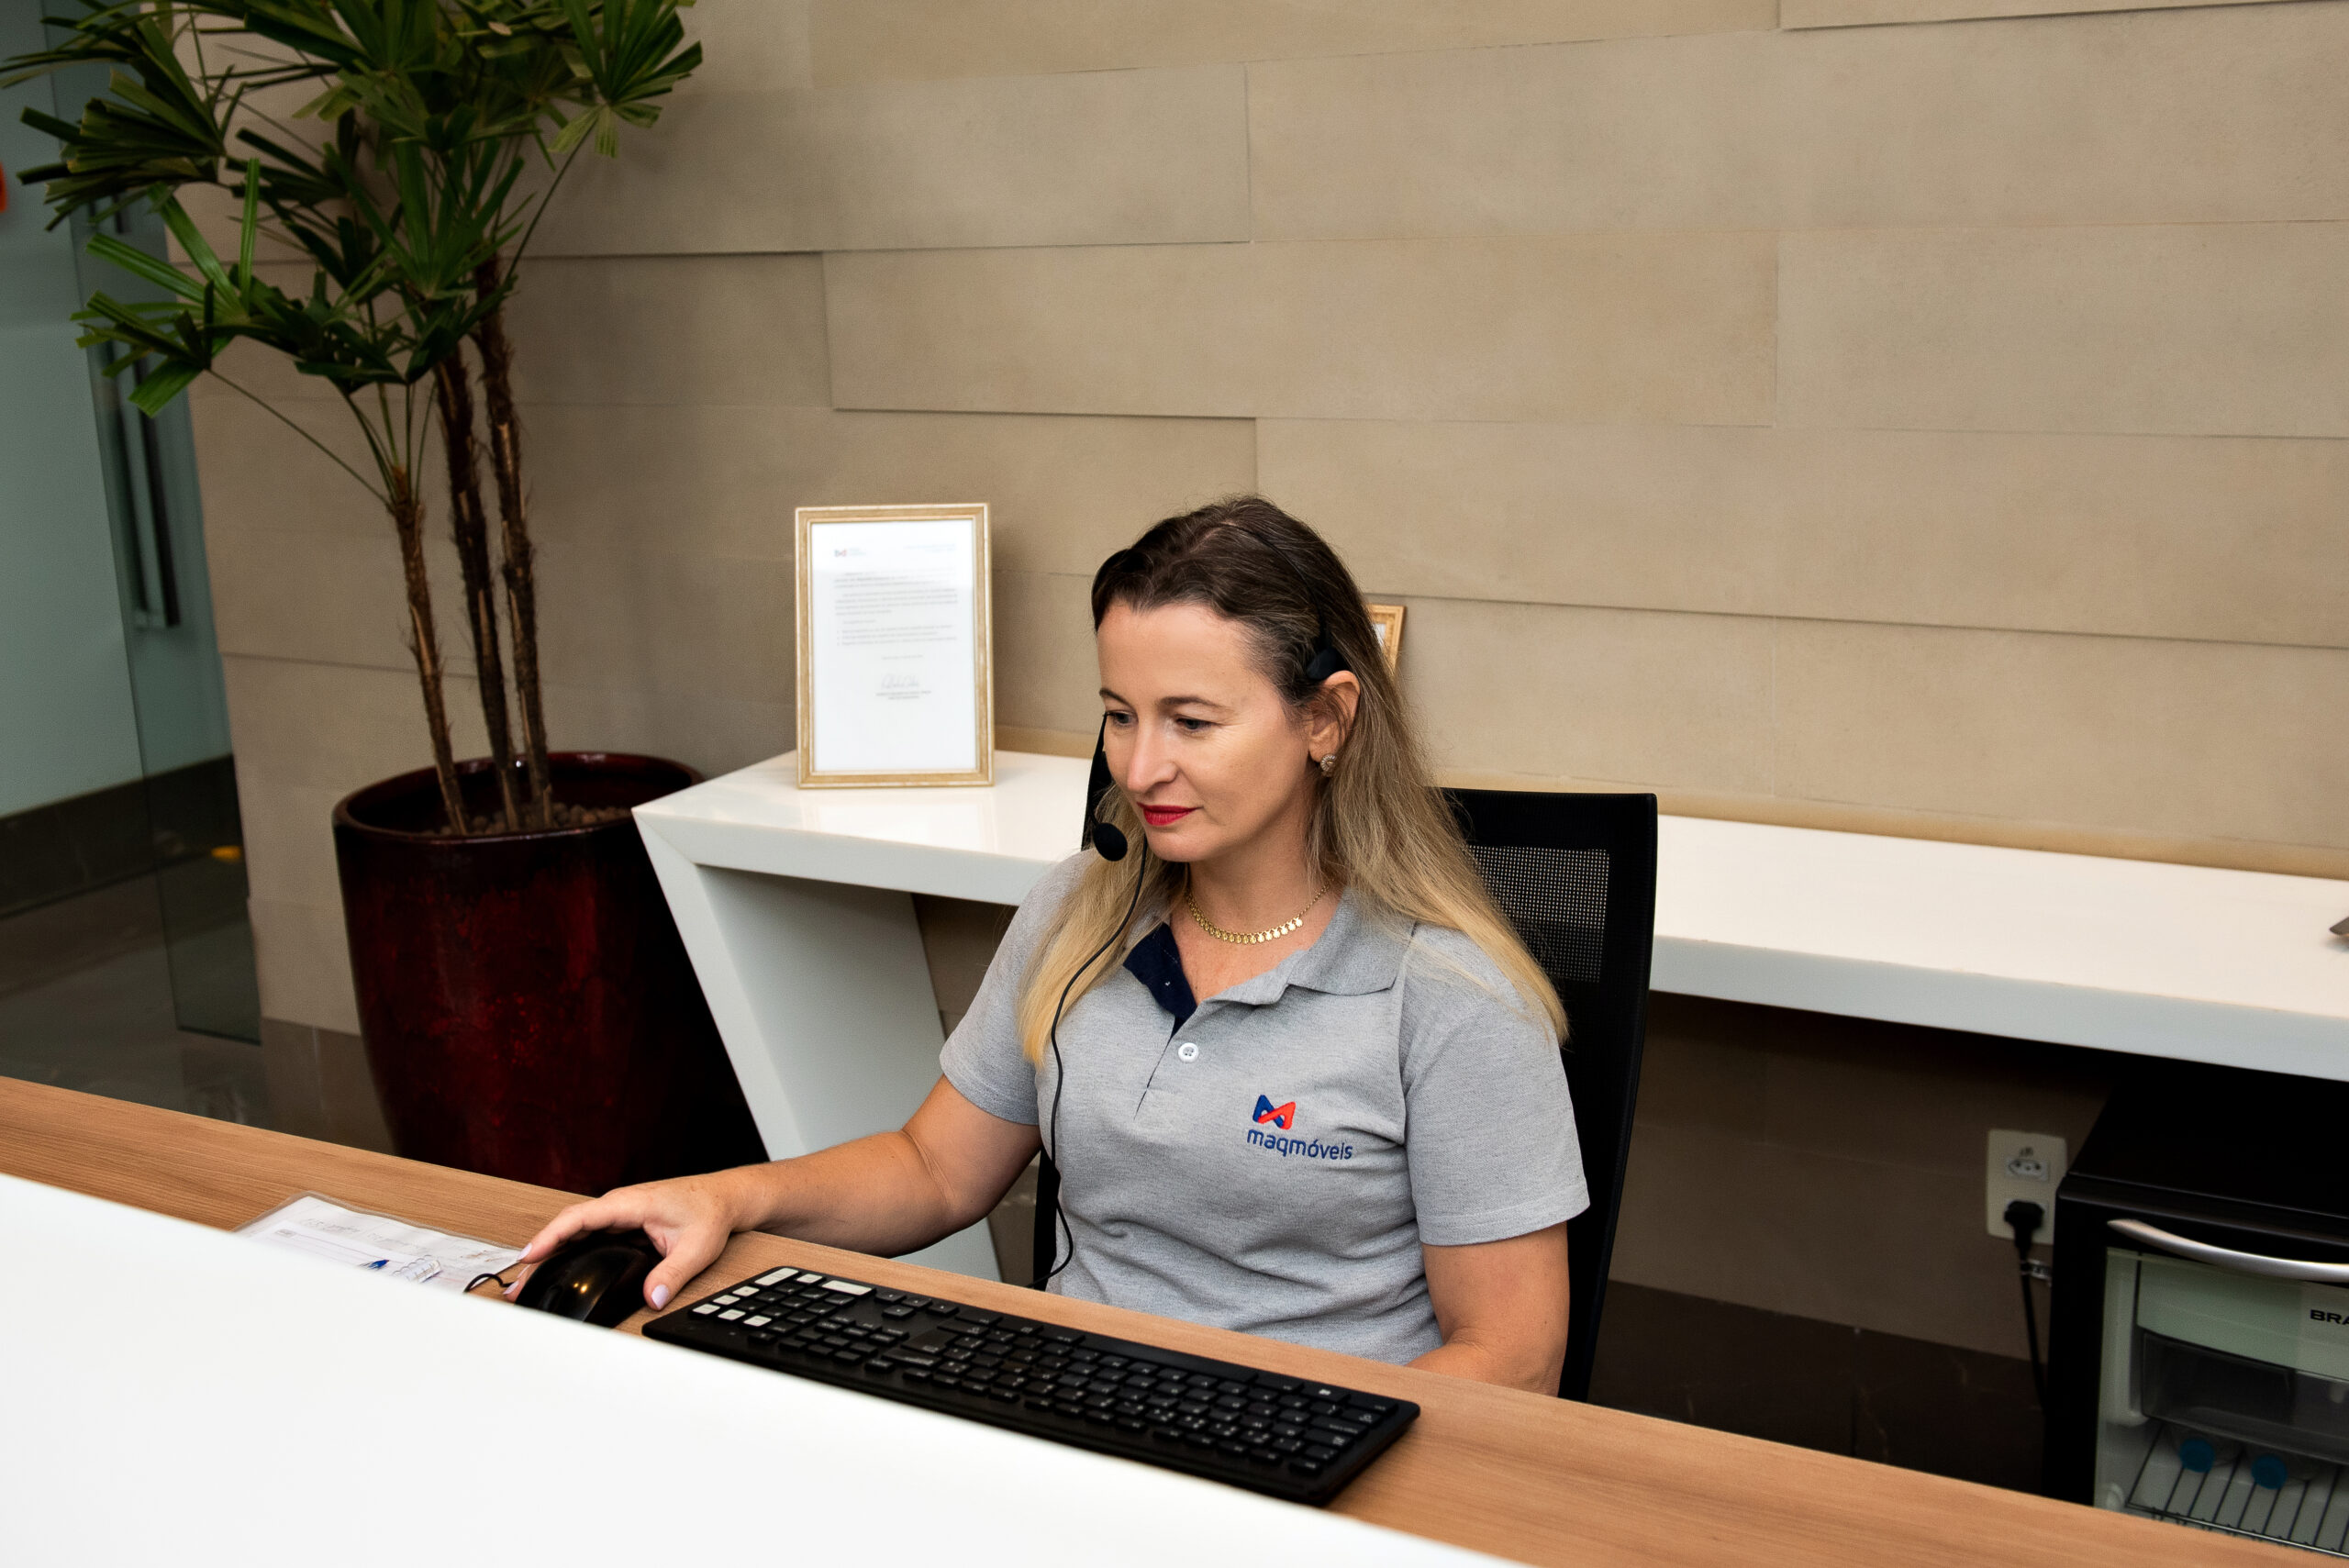 A imagem apresenta uma mulher de pele clara e cabelos loiros, vestindo uma camiseta cinza em seu posto de trabalho, atuando como recepcionista